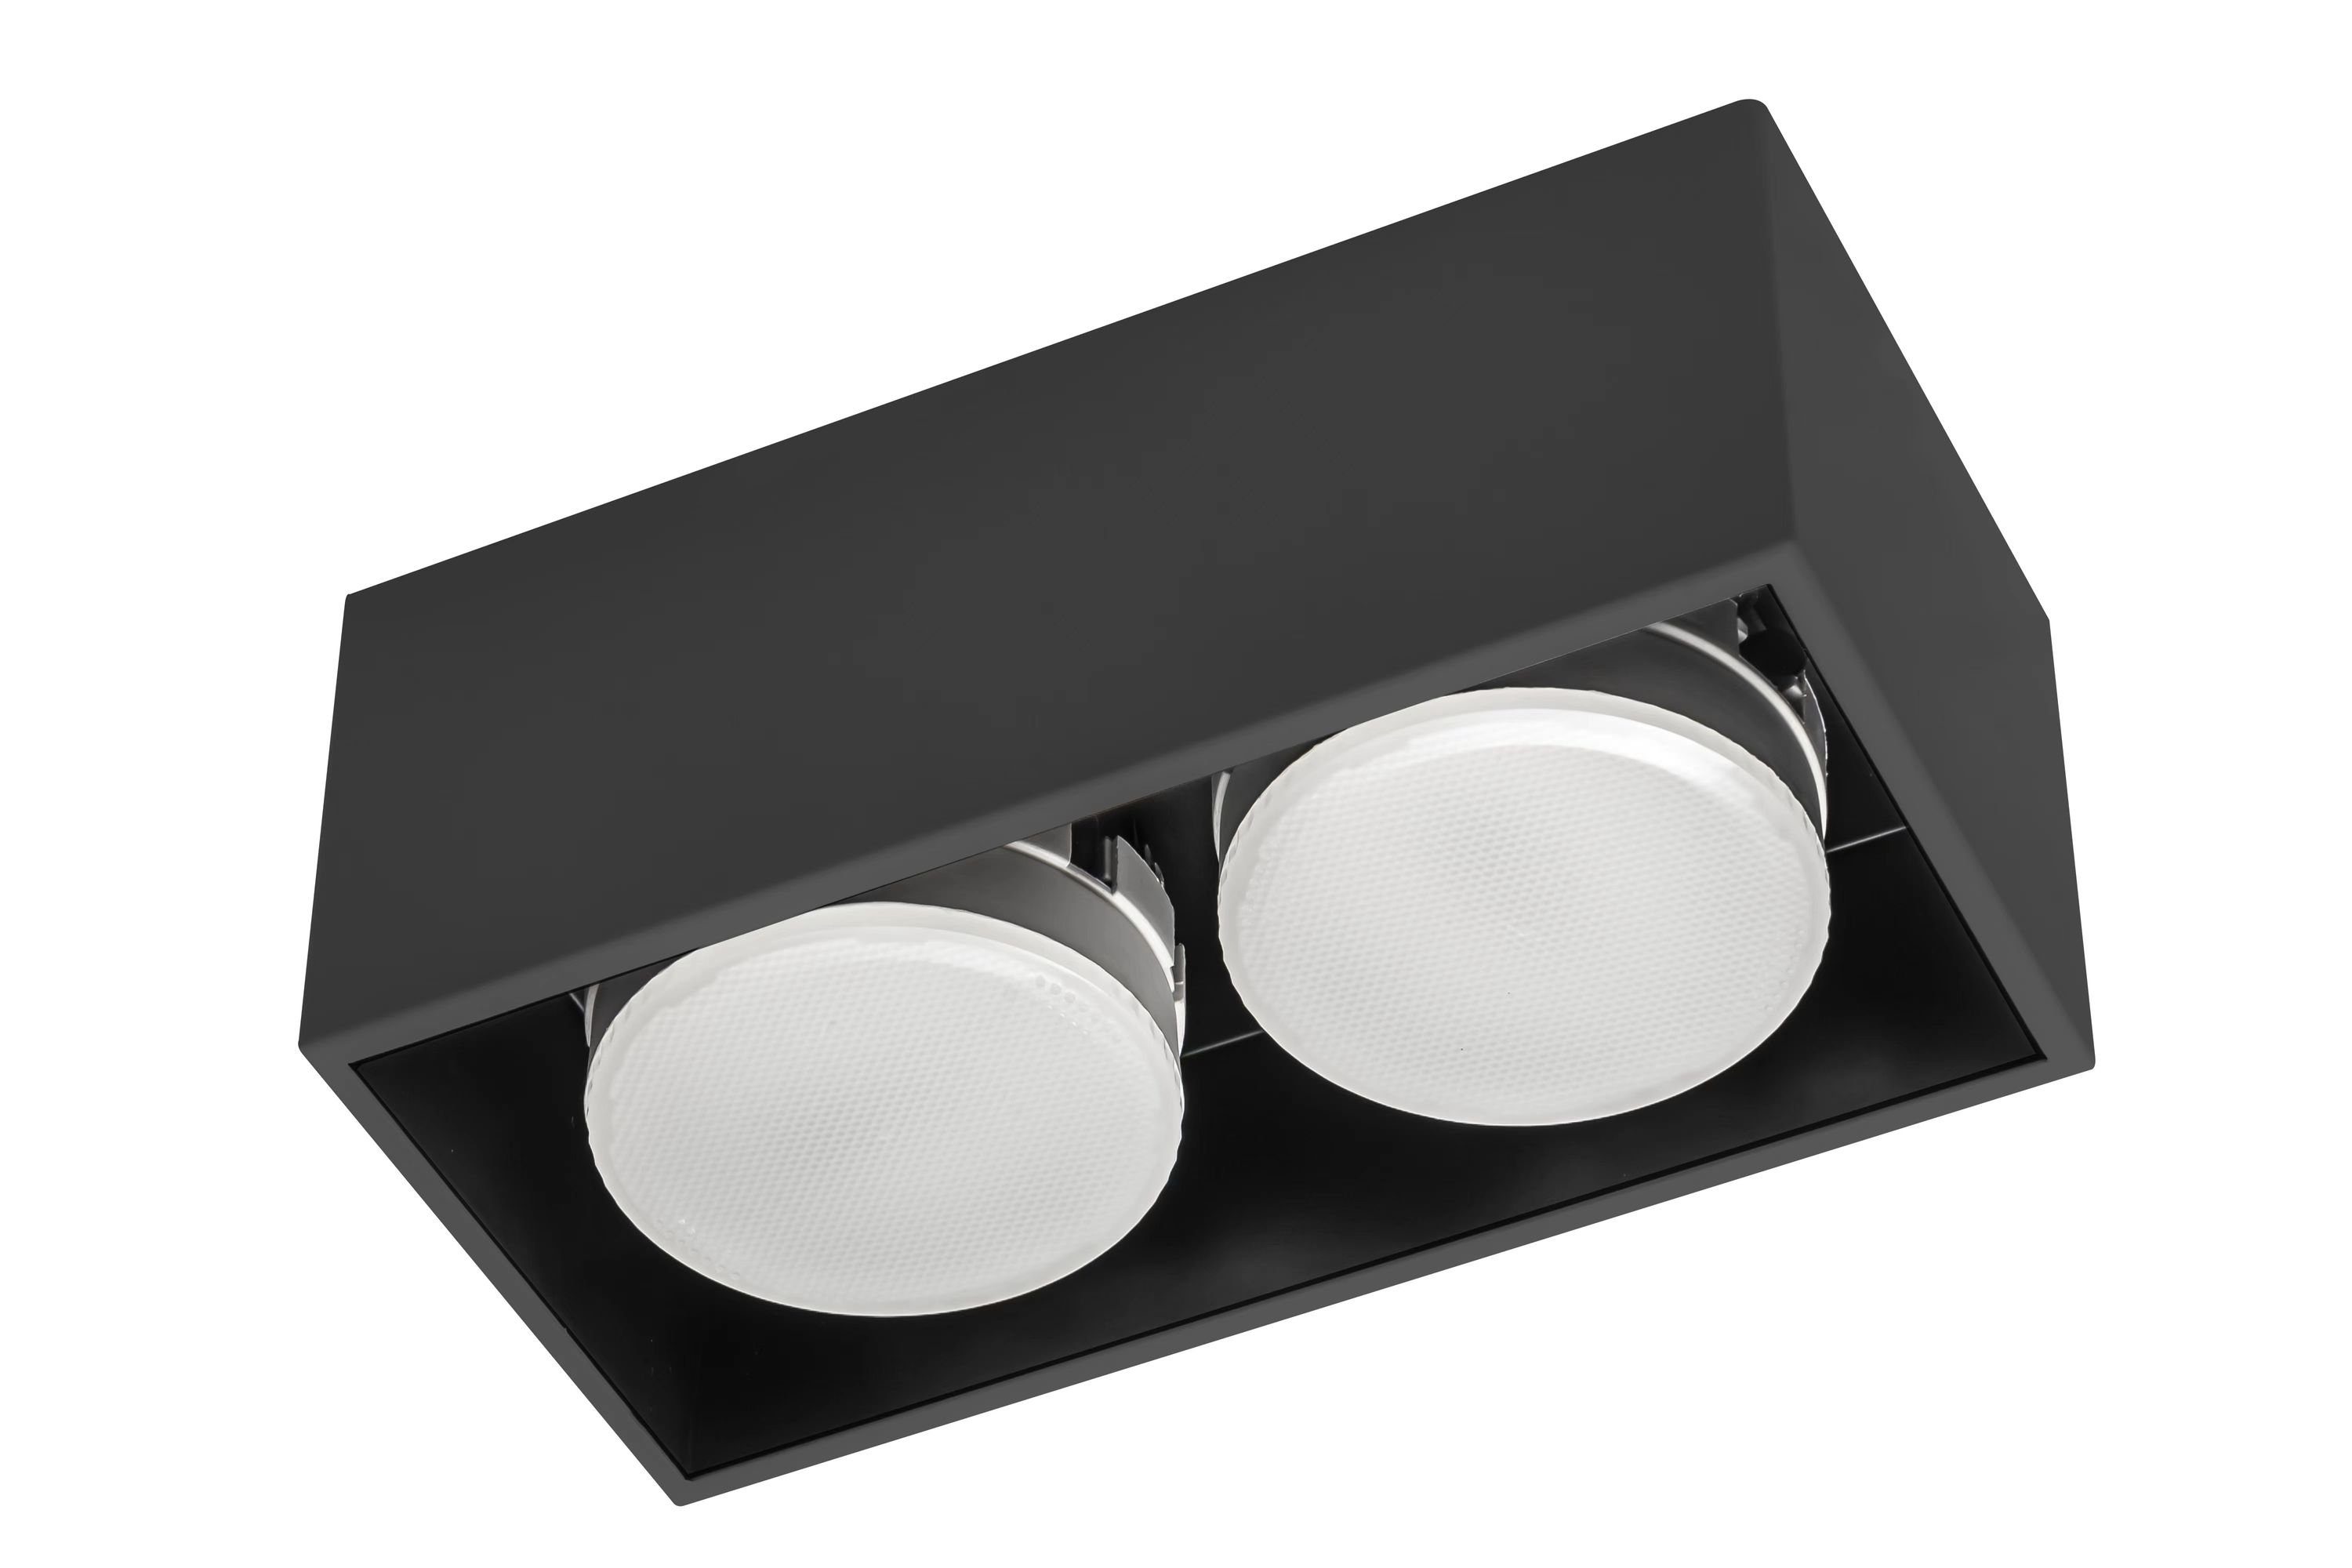 schwarz 2x bis Deckenleuchte light GX53 LED, 12W Deckenleuchte, LED's 2900195 LED